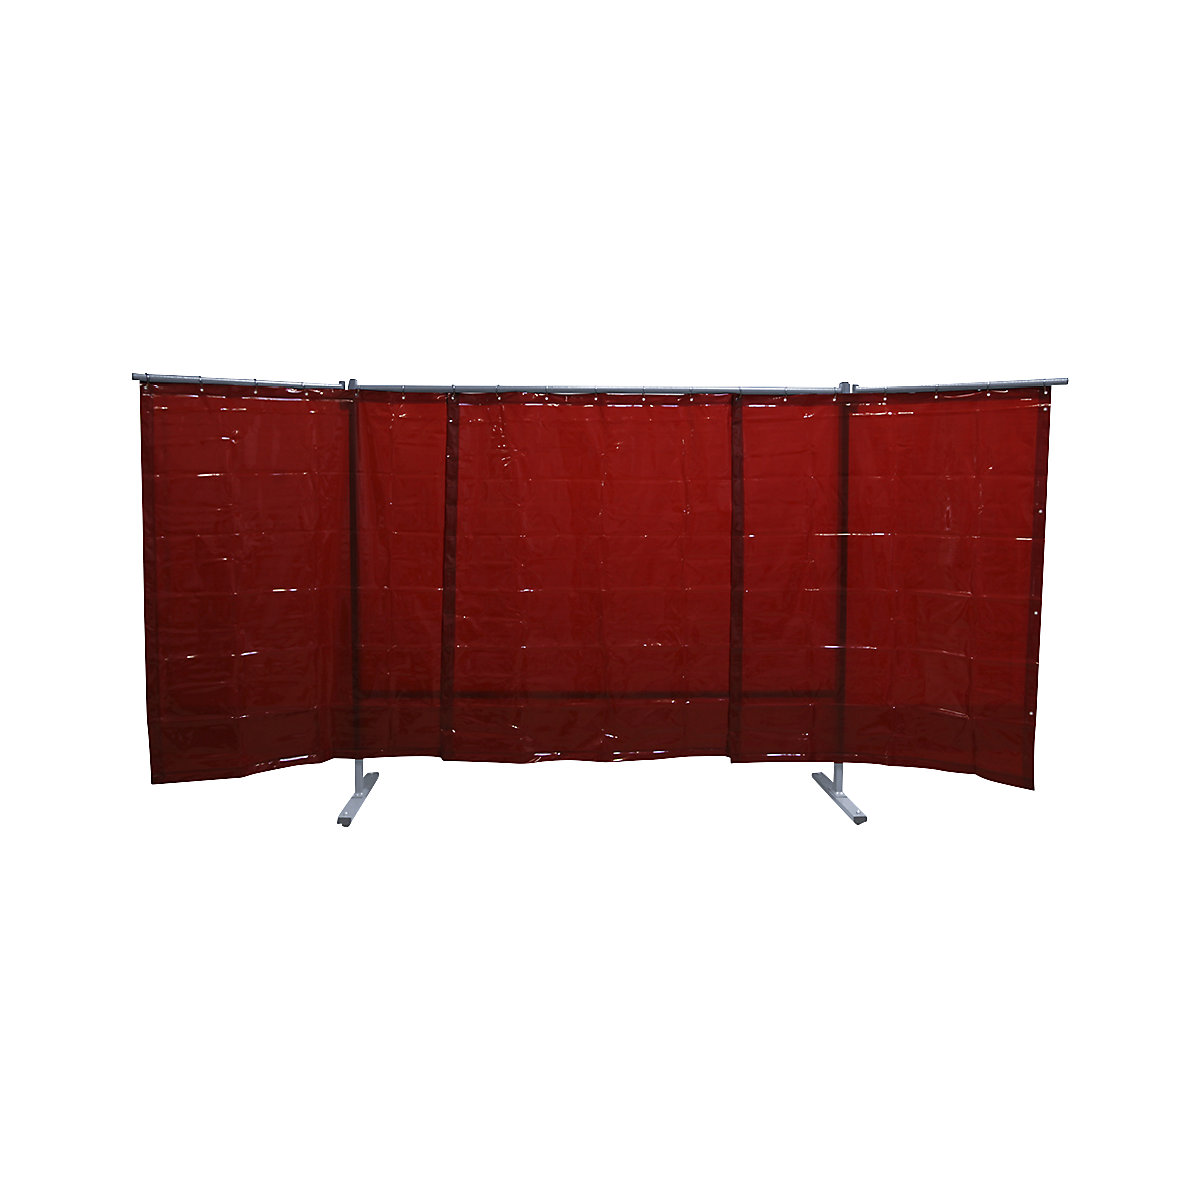 Spawalnicza ścianka ochronna, ruchoma, wersja 3-częściowa, wys. x szer. 1930 x 3800 mm, z ochronną folią spawalniczą, czerwony-4